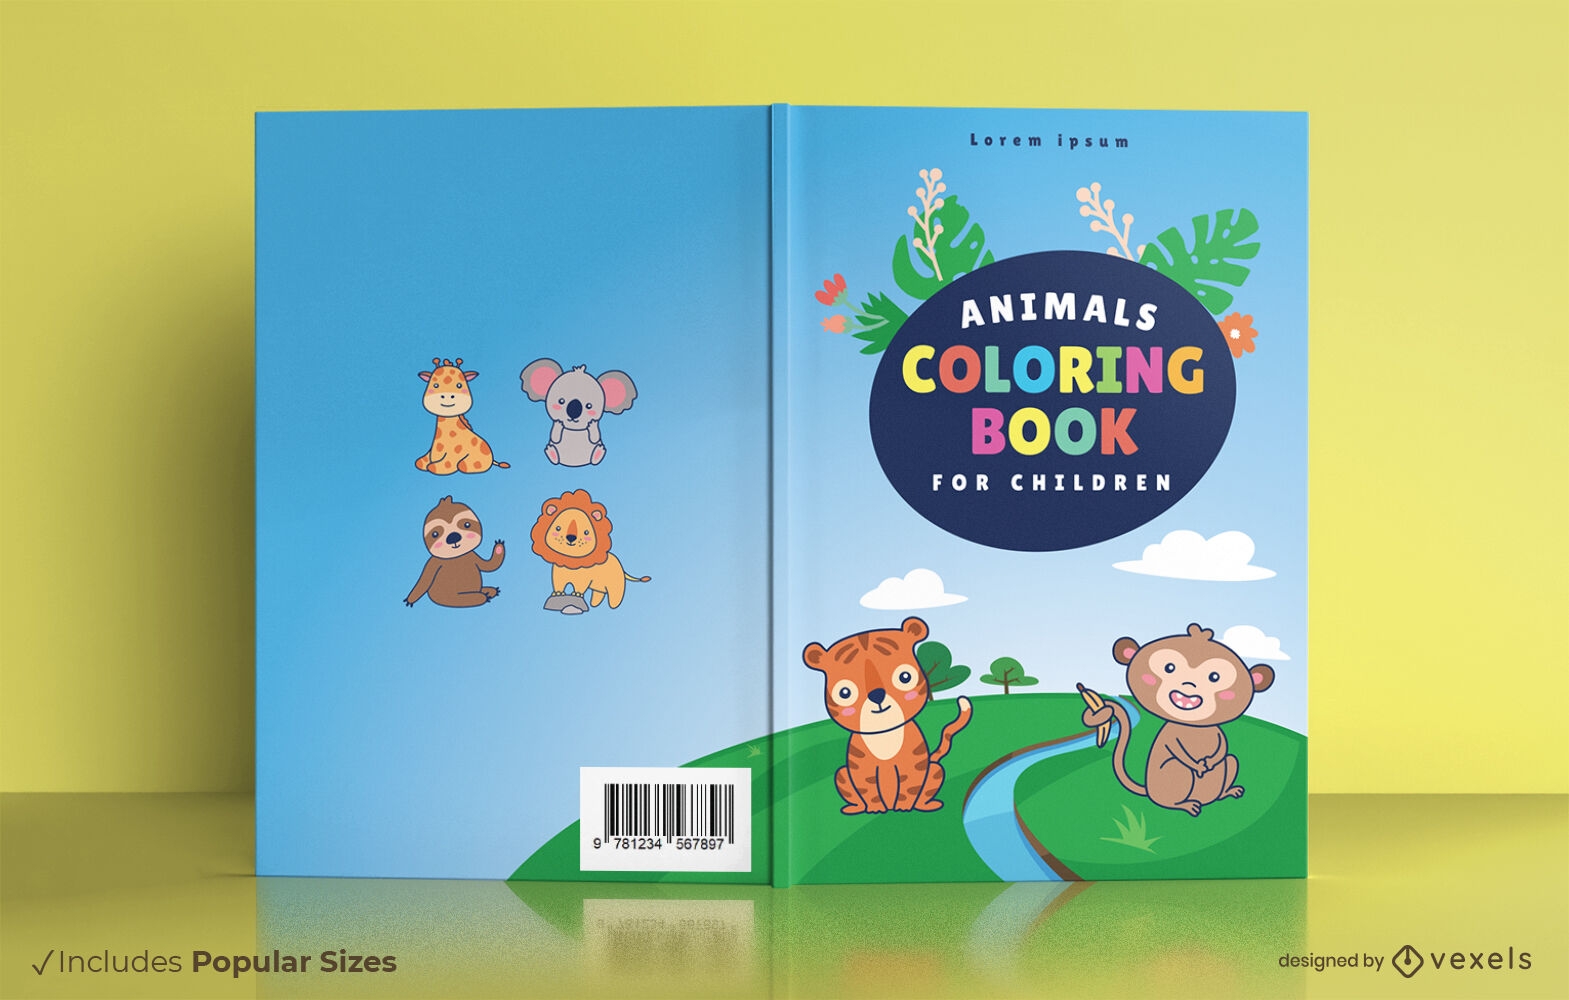 Descarga Vector De Diseño De Portada De Libro Para Colorear De Animales  Para Niños